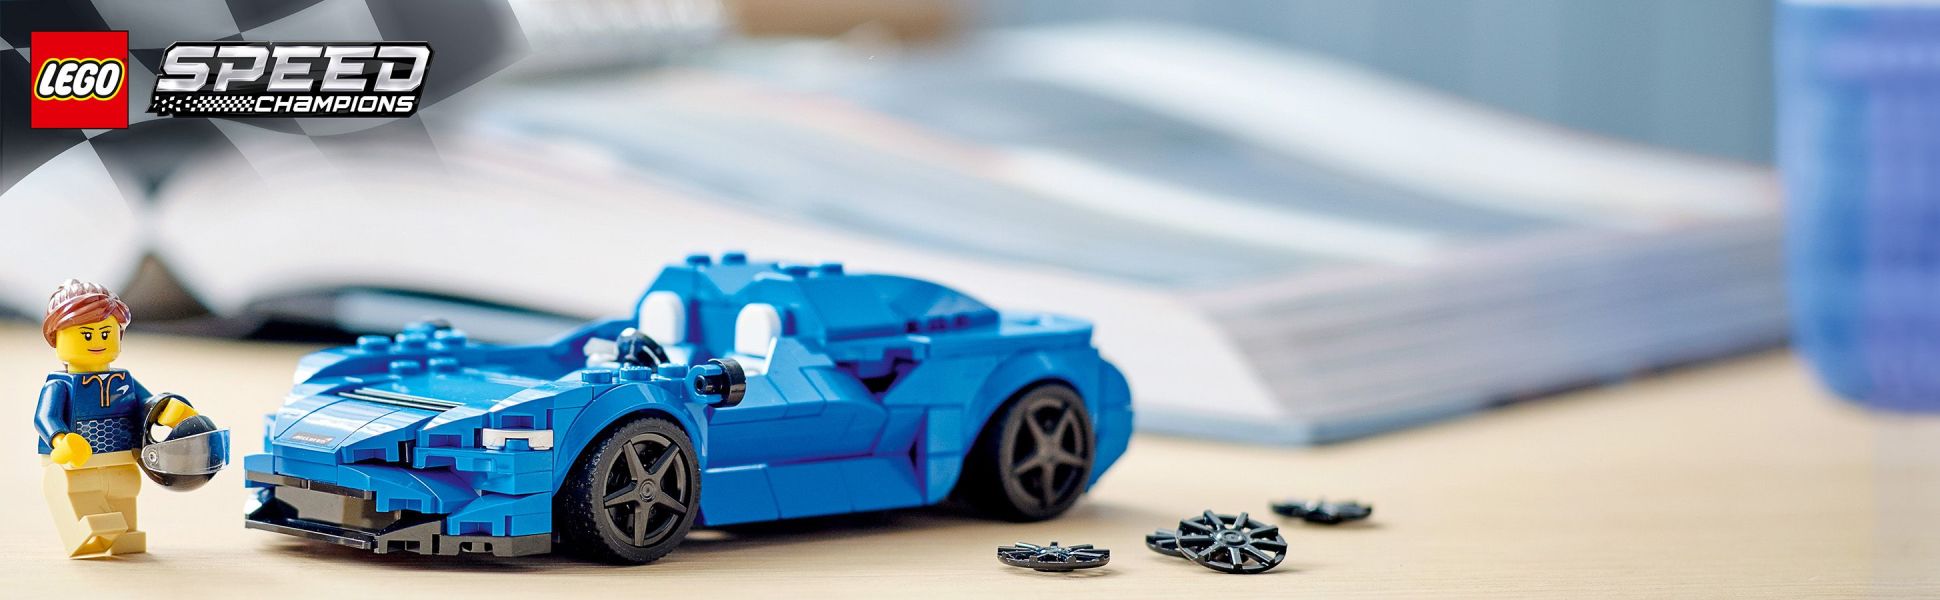 McLaren Elva 76902 | Speed Champions | Buy online at the Official LEGO®  Shop US